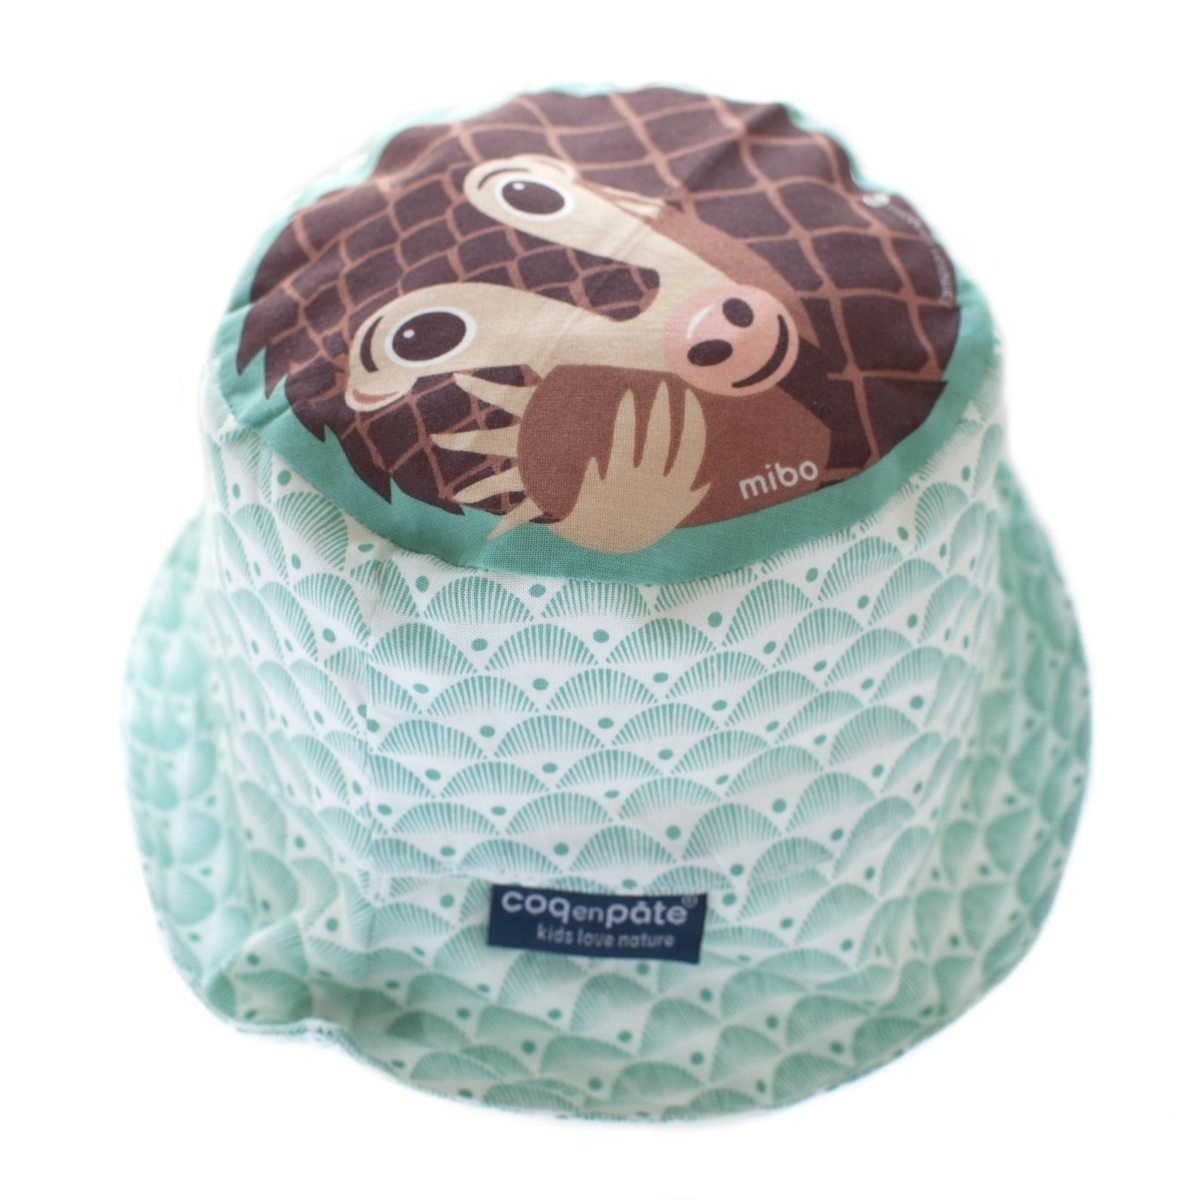 COQ EN PATE Sonnenhut Farbenfroher Kinder-Hut mit Tiermotiven und Mustern Sonnenschutz Schuppentier - Größe: L